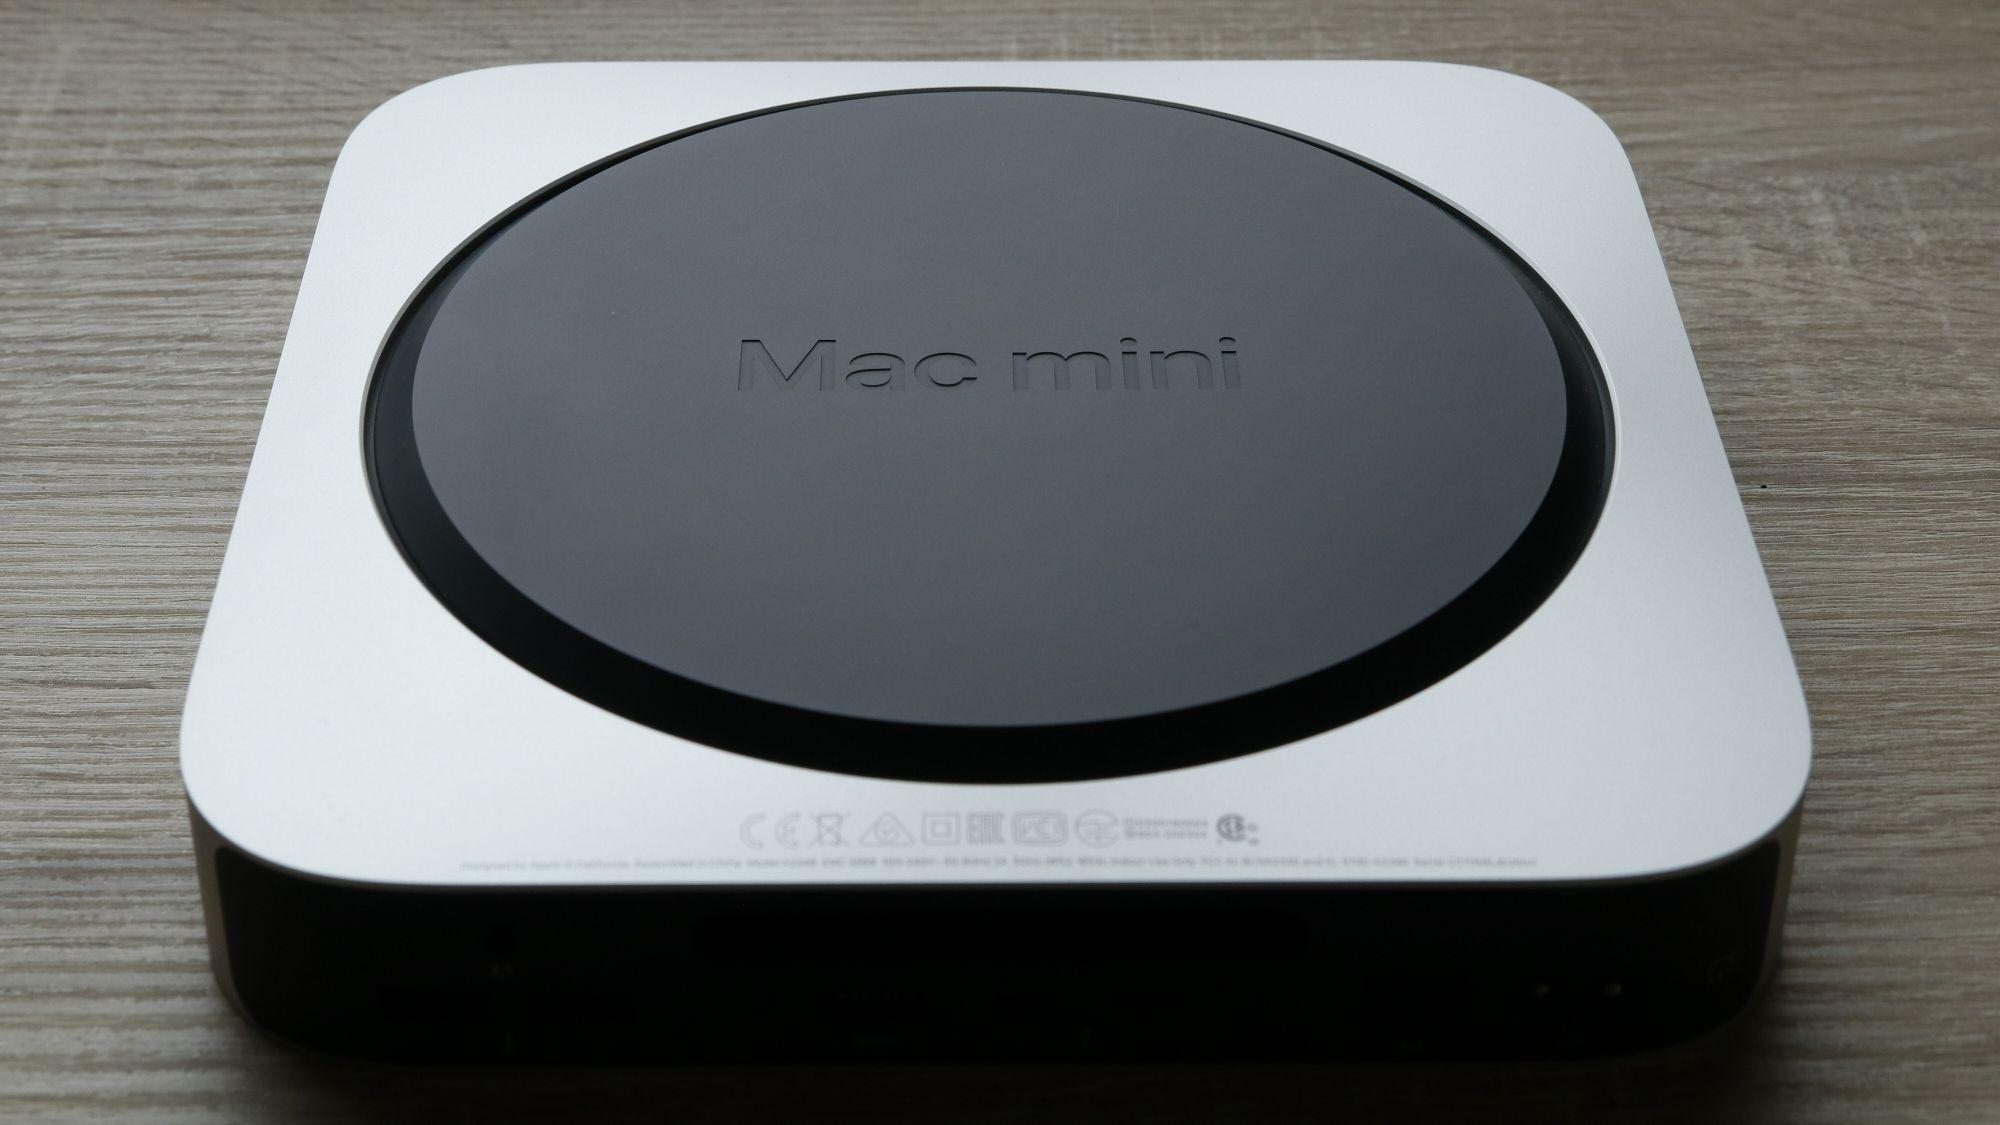 Jo altså, dette er undersiden av Mac mini.